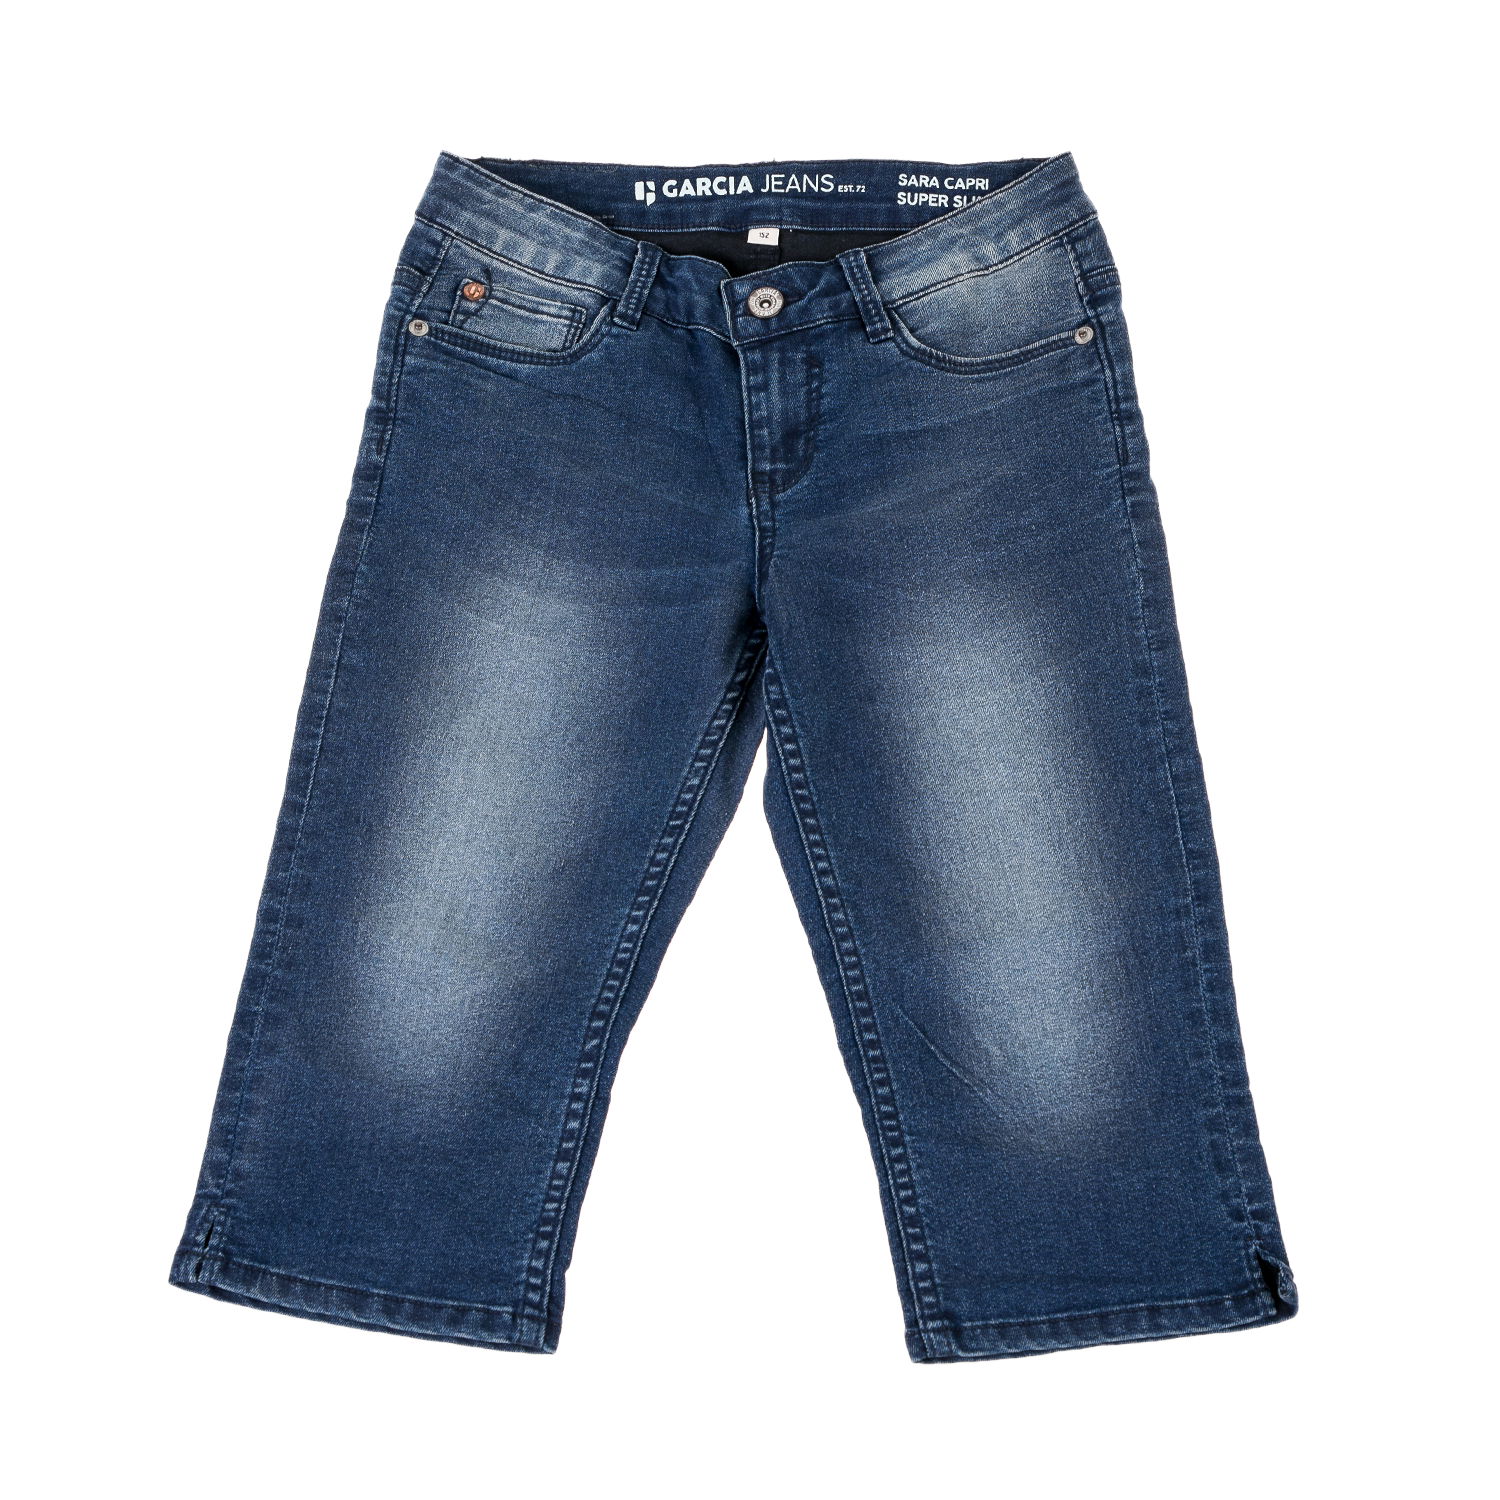 Παιδικά/Girls/Ρούχα/Παντελόνια GARCIA JEANS - Παιδικό jean παντελόνι GARCIA JEANS μπλε